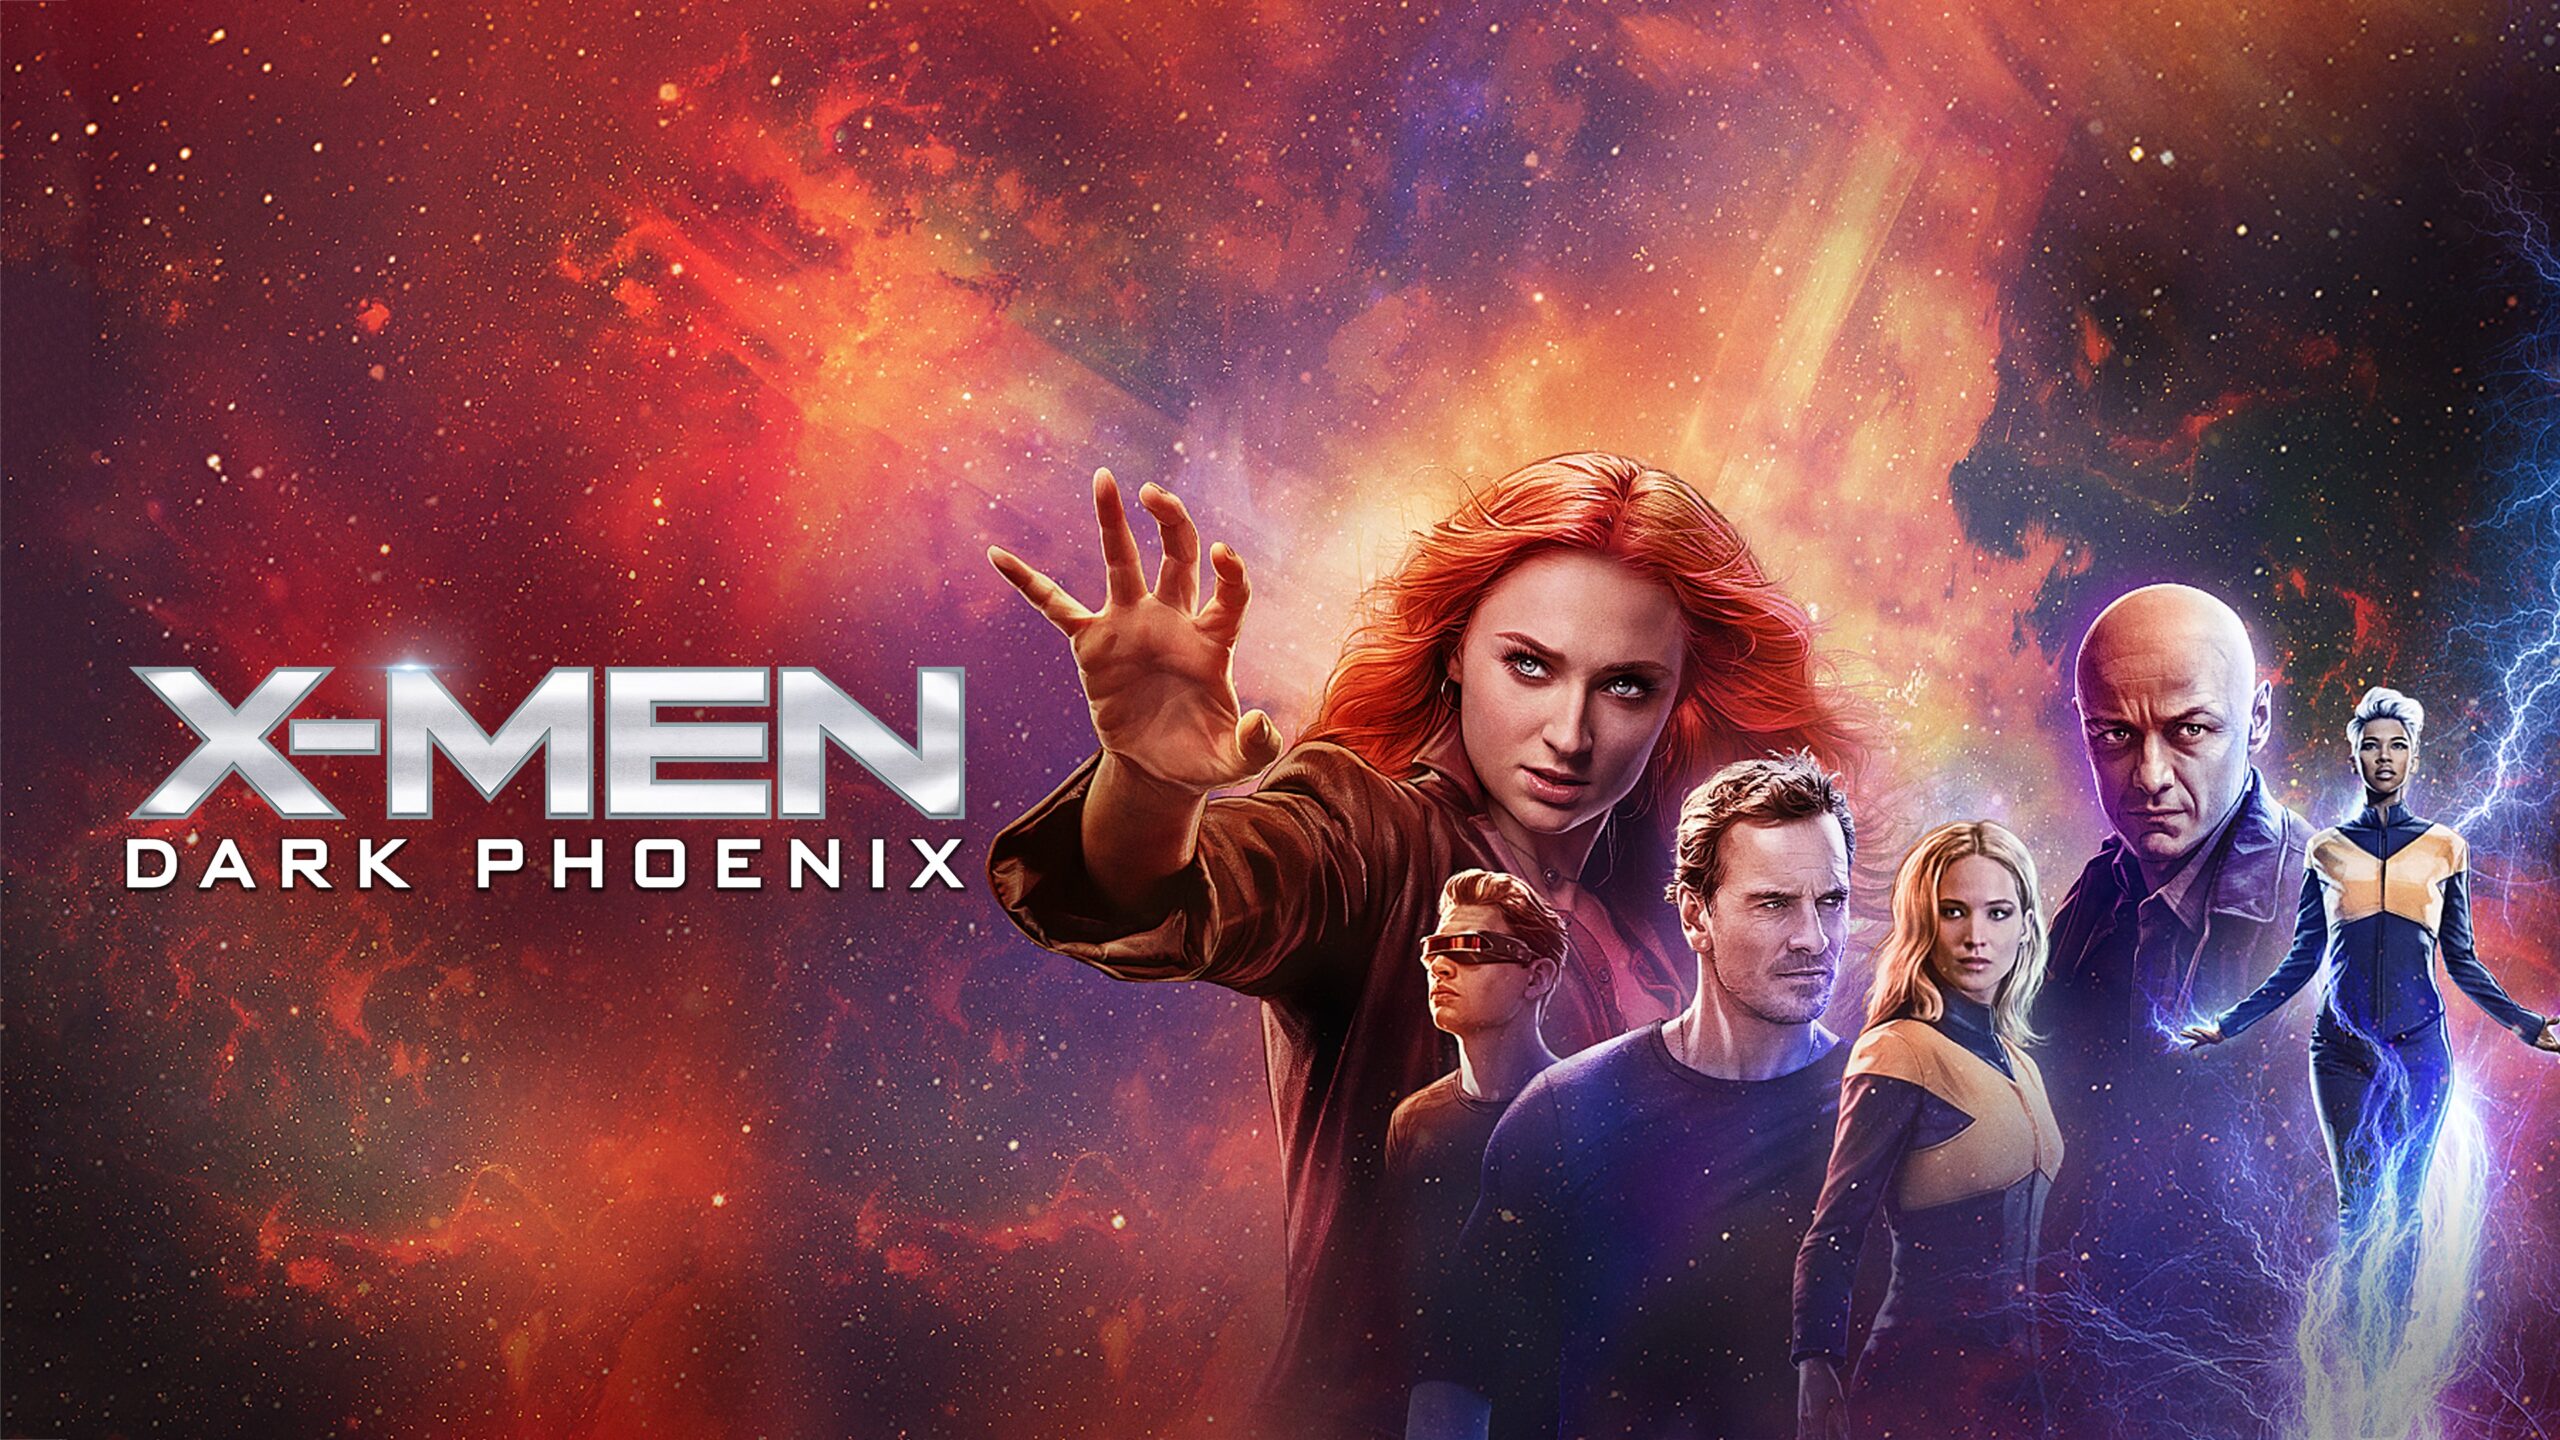  X-Men Dark Phoenix is een Amerikaanse superheldenfilm uit 2019, gebaseerd op de X-Men stripboeken van Marvel Comics. Het is de twaalfde film in de X-Men filmserie en de vervolgfilm op X-Men: Apocalypse uit 2016. De film volgt het verhaal van Jean Grey, een mutant met telepathische en telekinetische krachten, die wordt bezeten door een kosmische kracht gena 